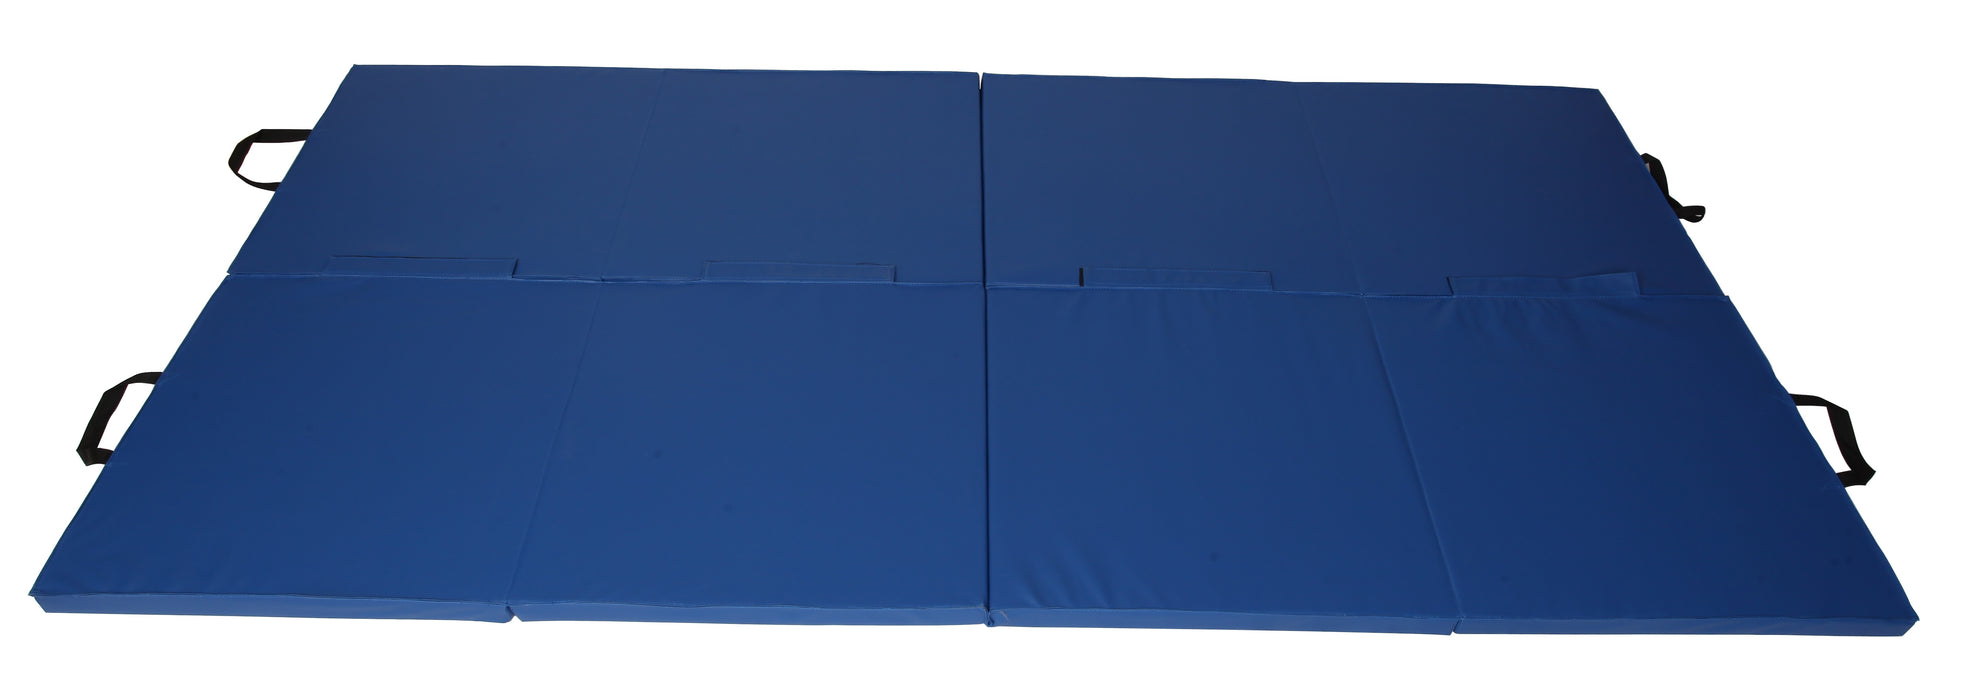 Portable Foldable Vinyl 240cm x 122cm Exercise Mat - Blue